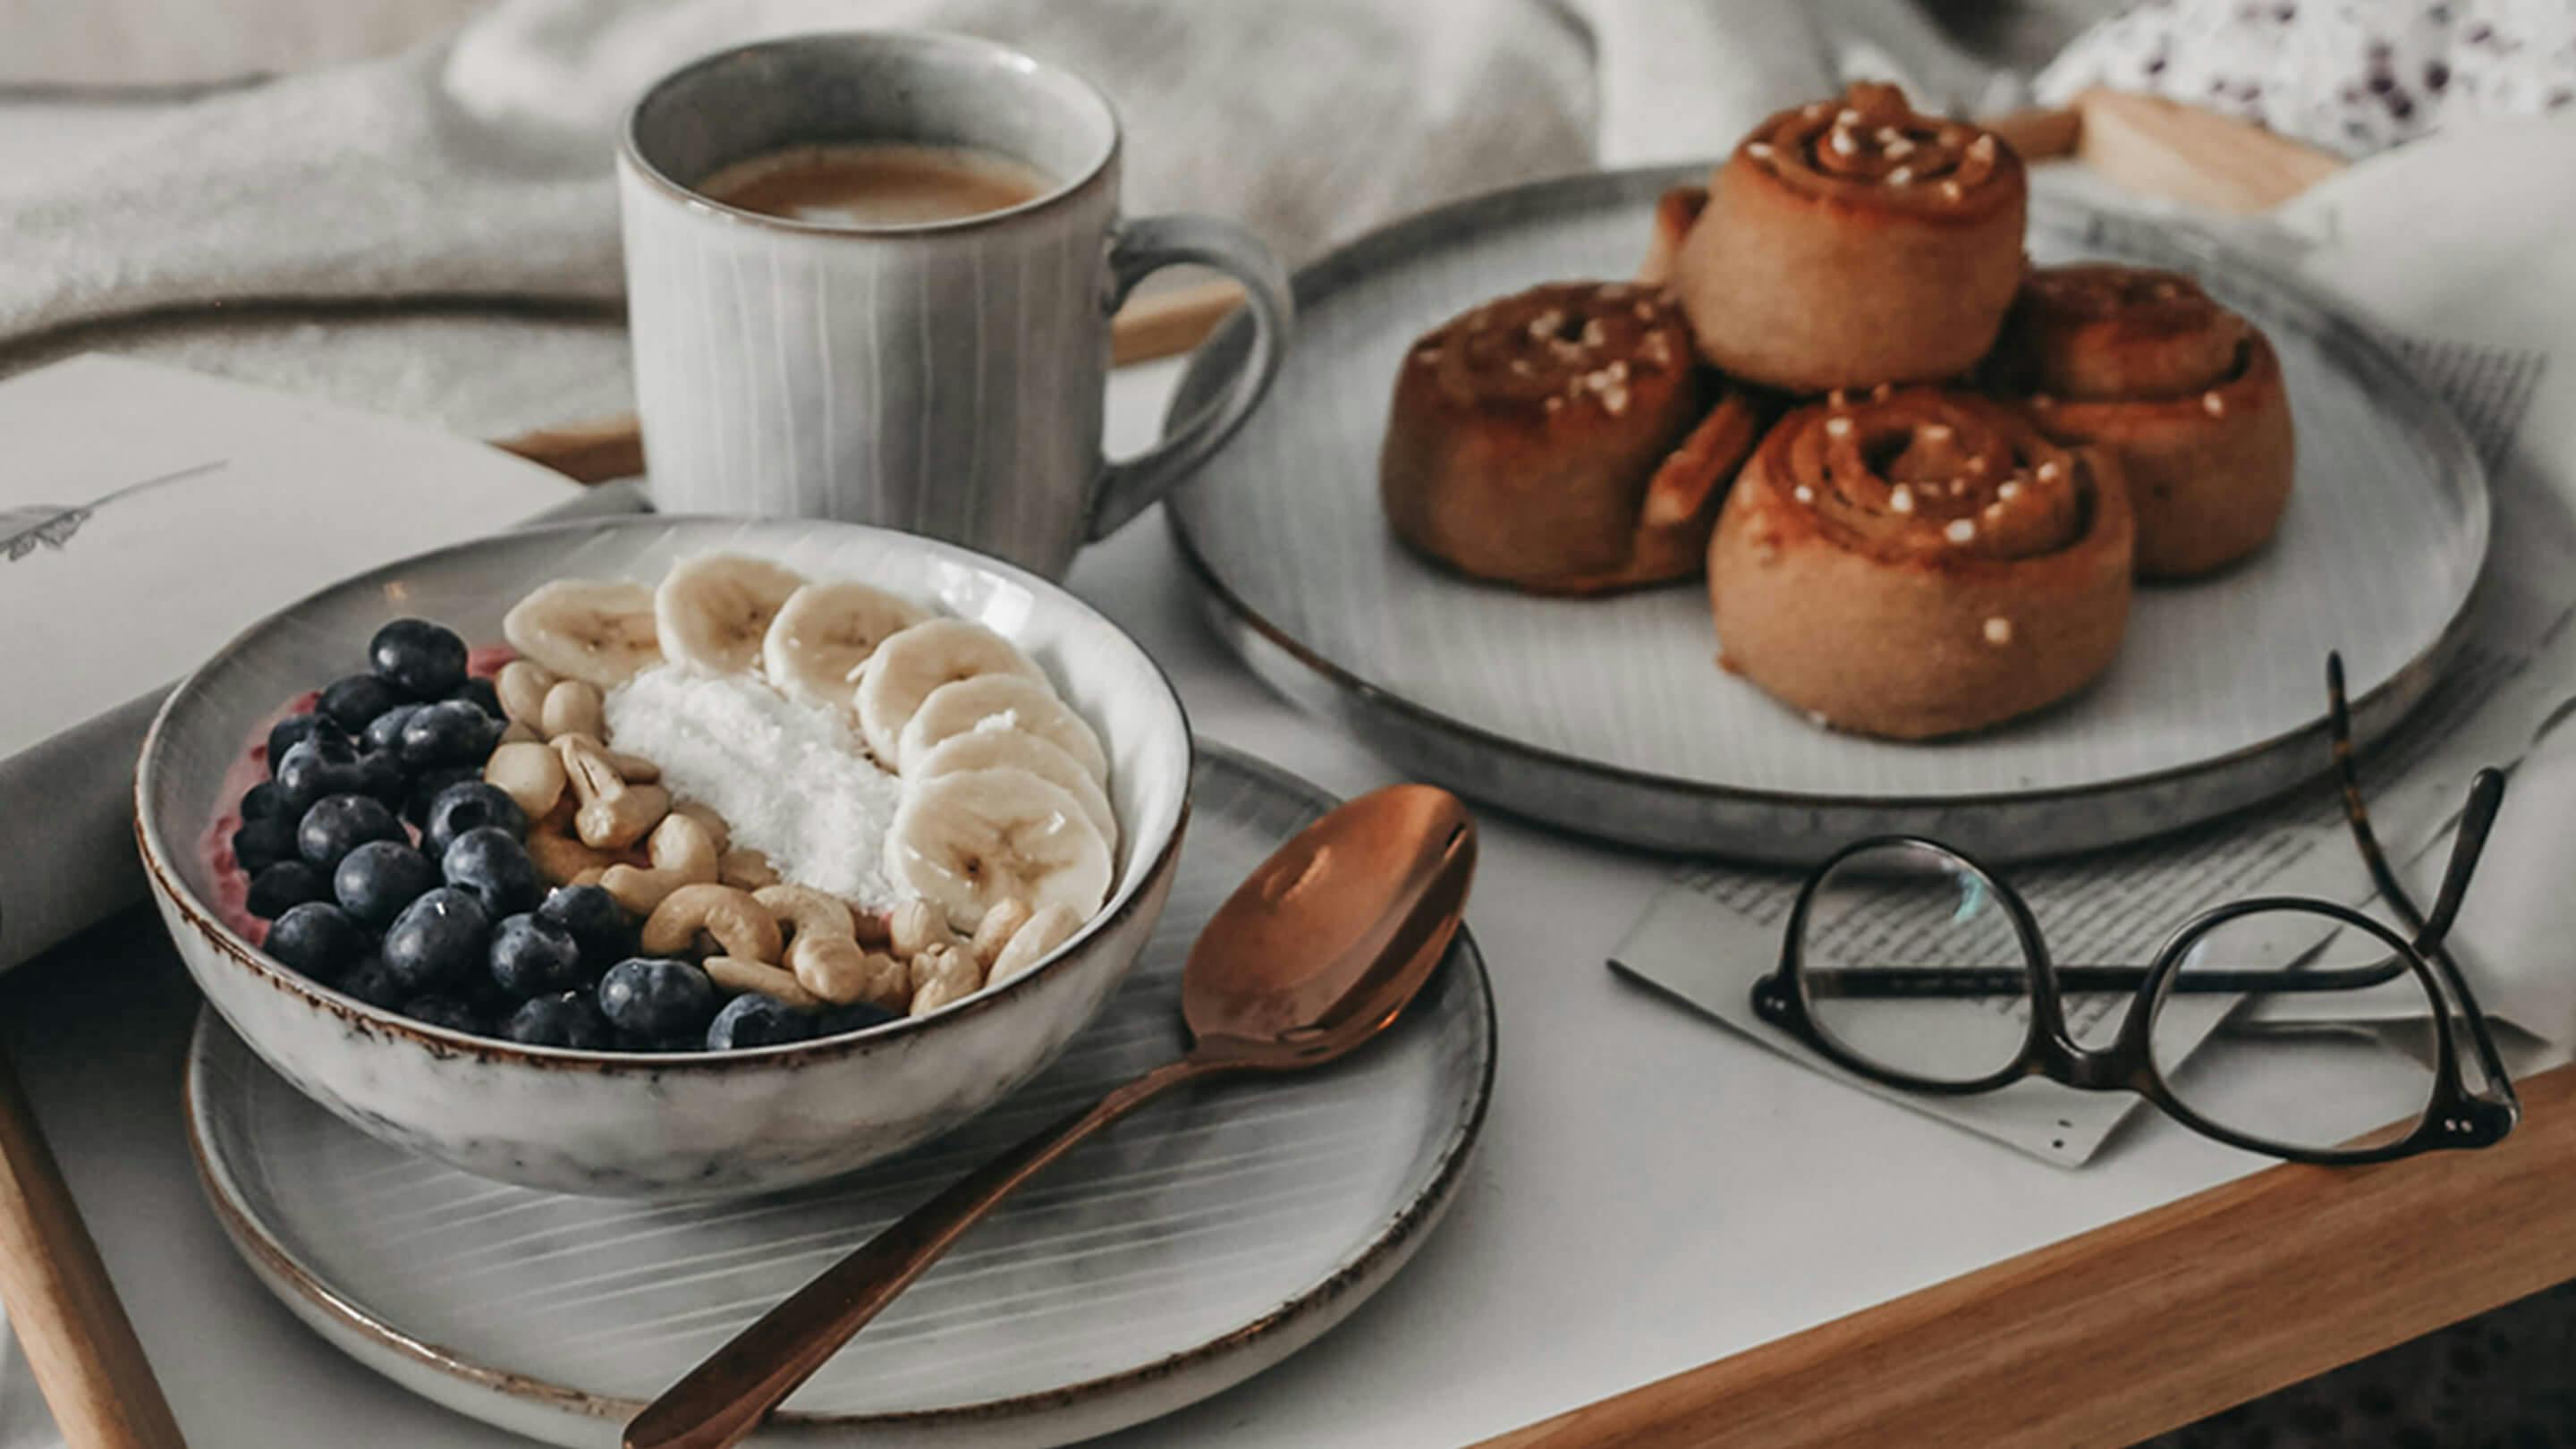 Frühstücksset in Grau (Butlers) auf Tablett: kleiner Teller, Schale mit Müsli, grosser Teller mit Zimtschnecken, Kaffeebecher.